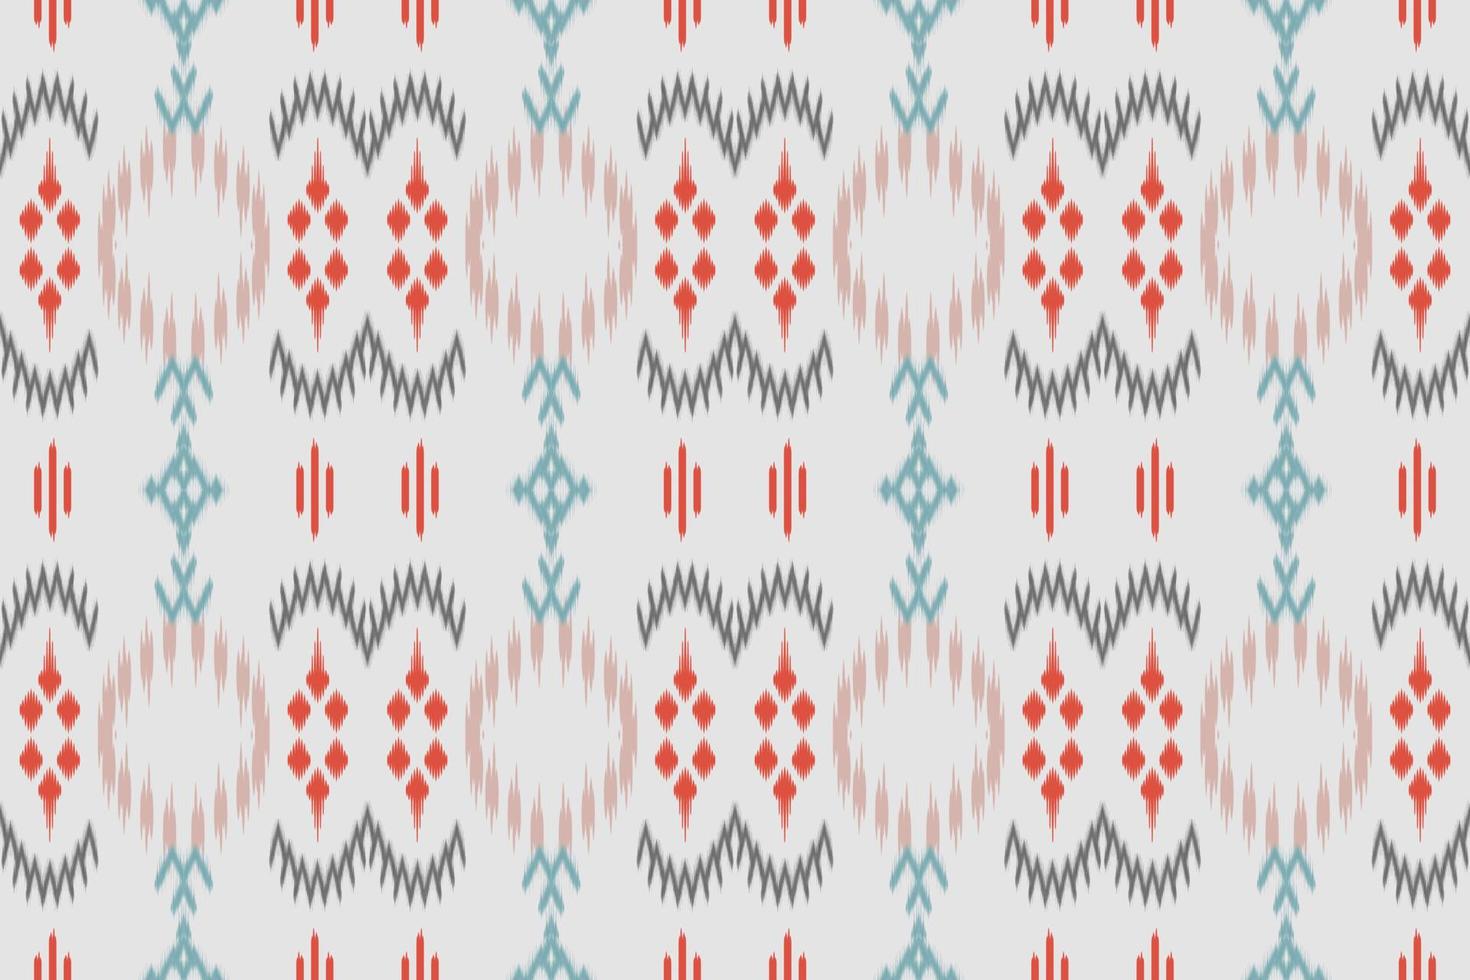 motivo ikat damasco tribal resumen borneo escandinavo batik bohemio textura vector digital diseño para impresión saree kurti tela cepillo símbolos muestras